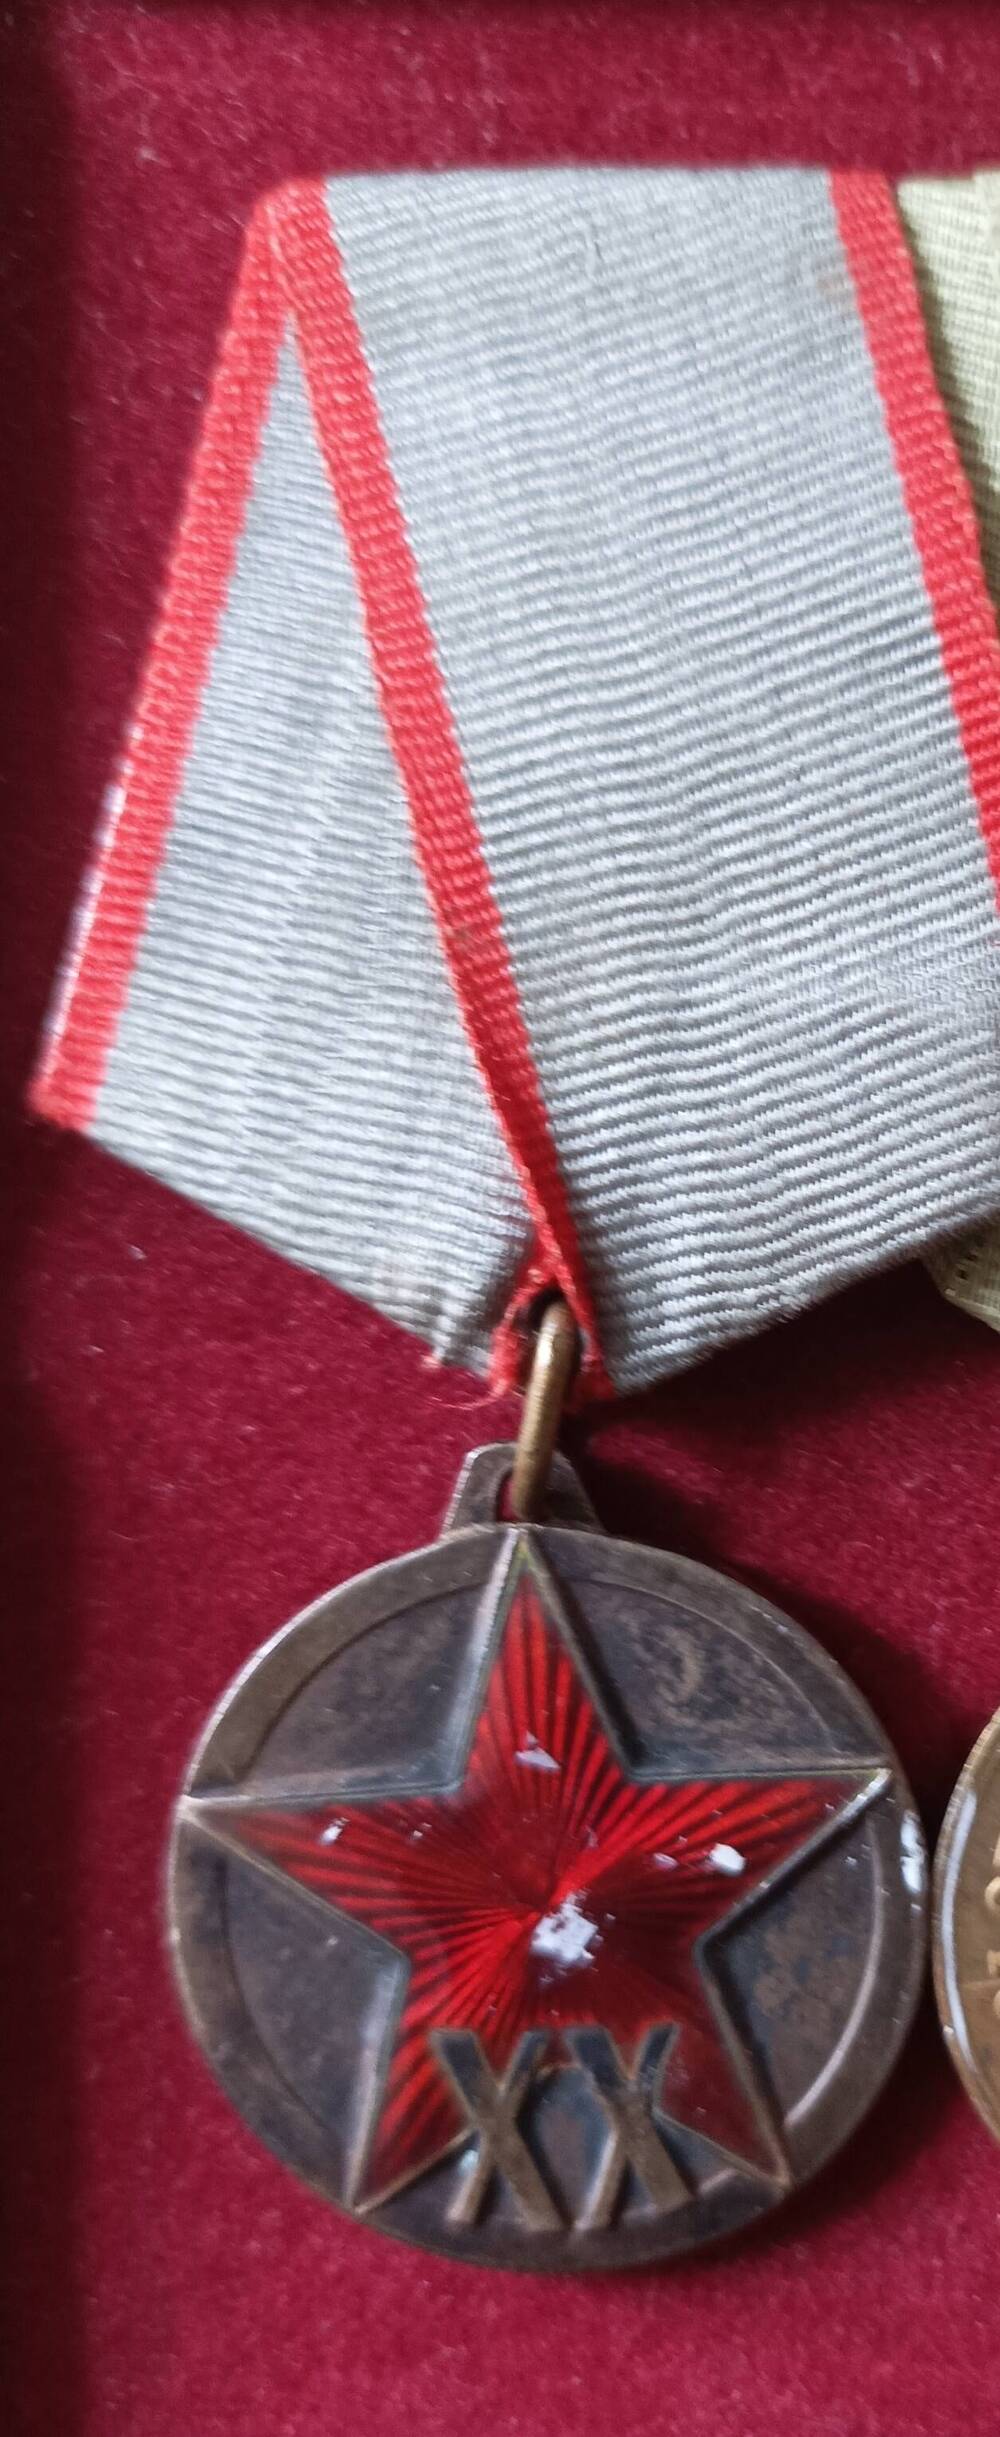 Медаль.